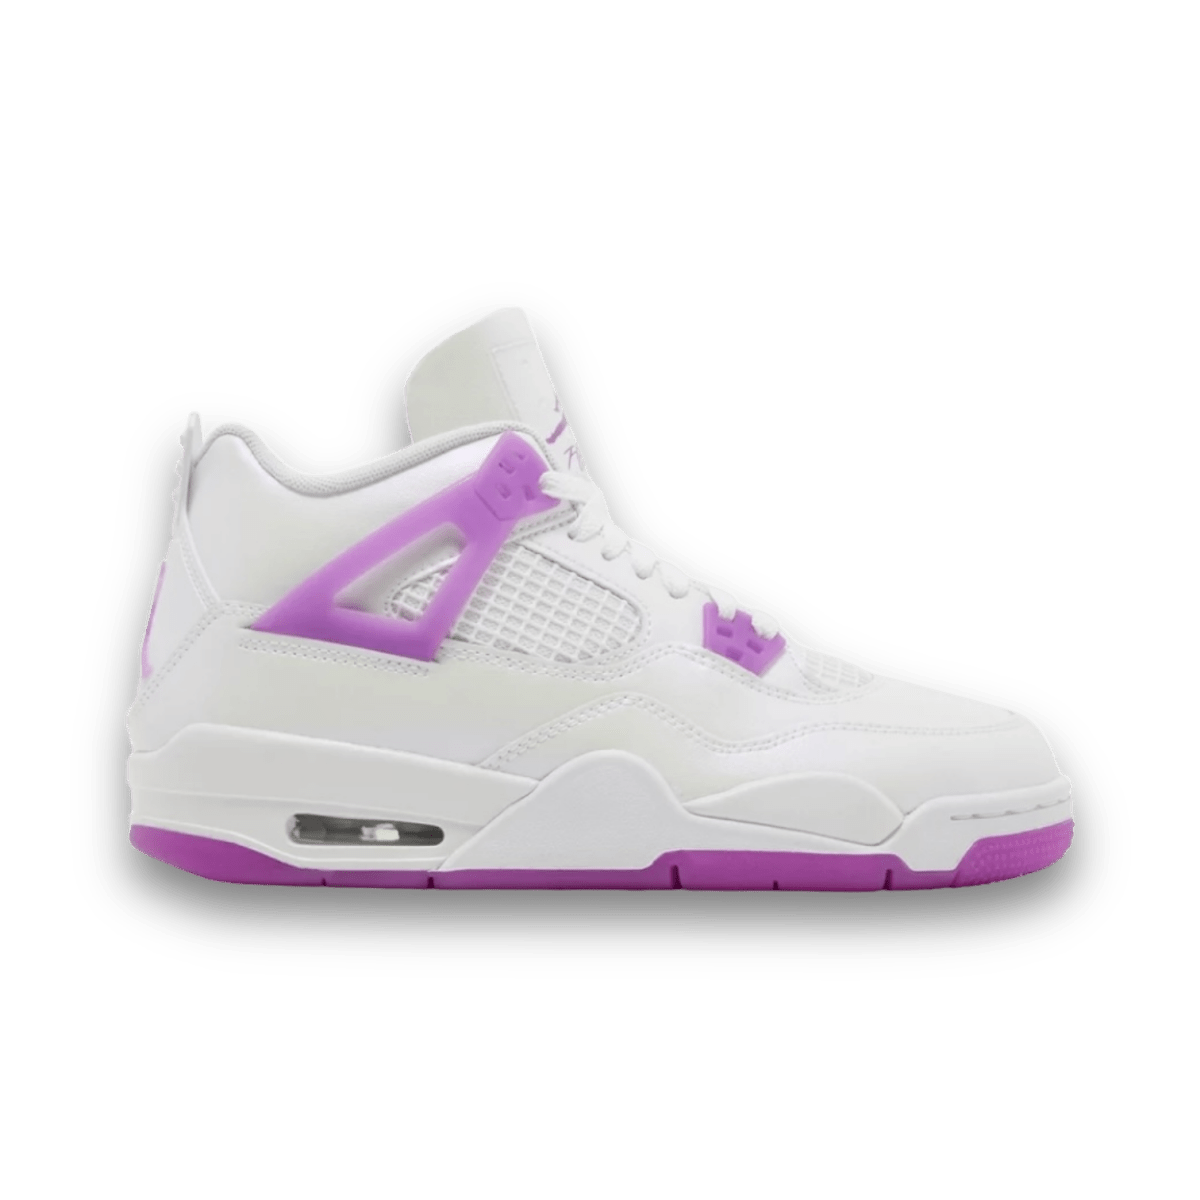 Air Jordan 4 Retro 'Hyper Violet' - Toddler - Mid Sneaker - Jawns on Fire Sneakers & Streetwear